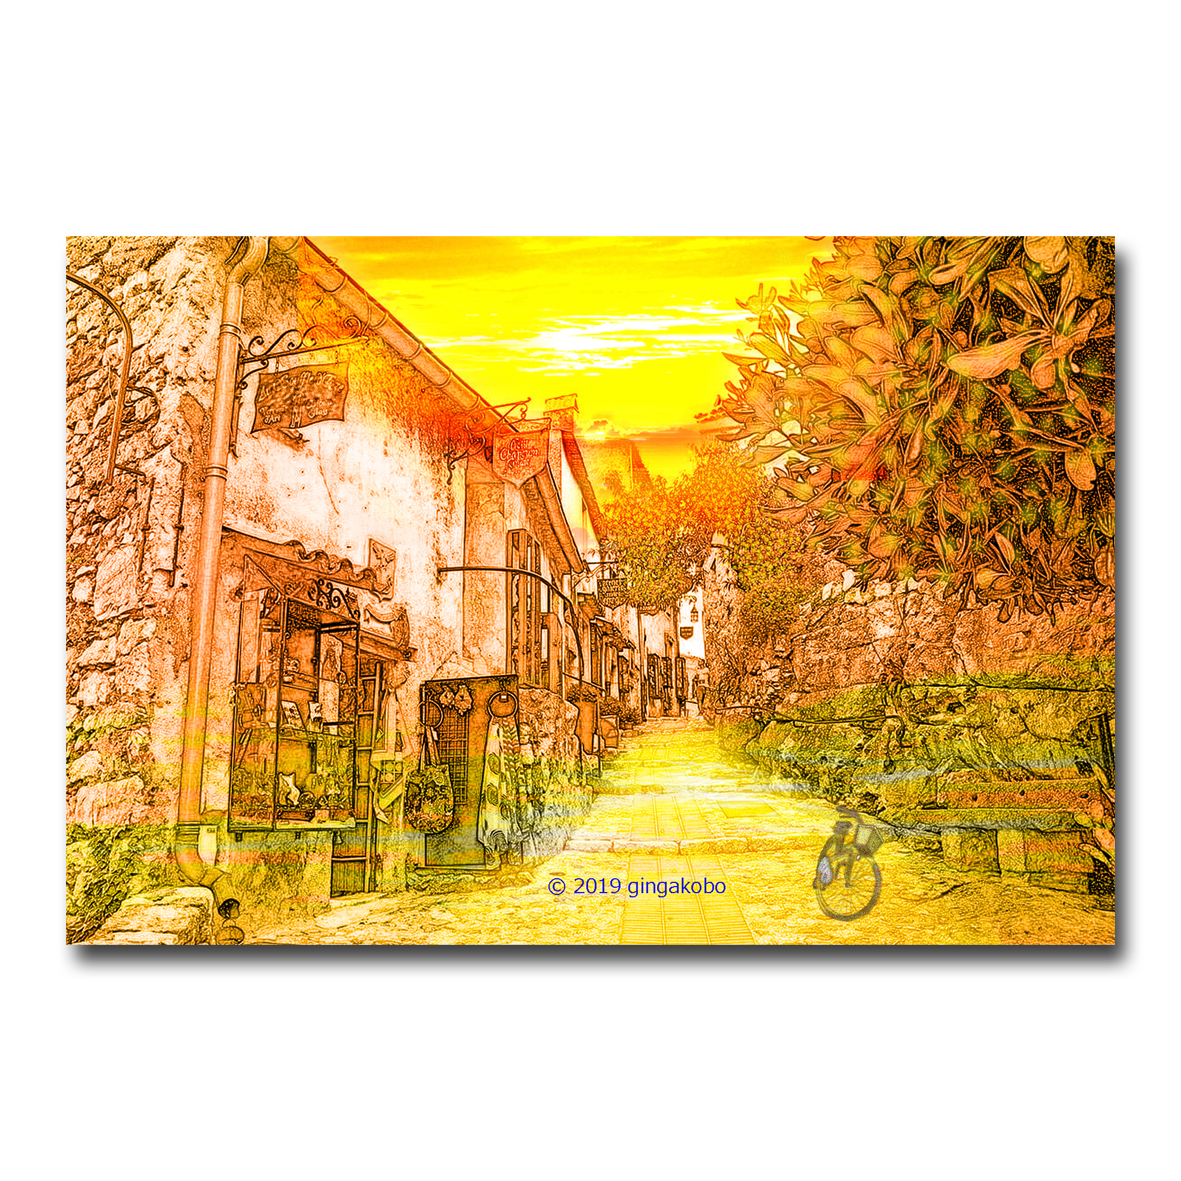 秋は夕暮れ ほっこり癒しのイラストポストカード2枚組 No 876 Iichi ハンドメイド クラフト作品 手仕事品の通販